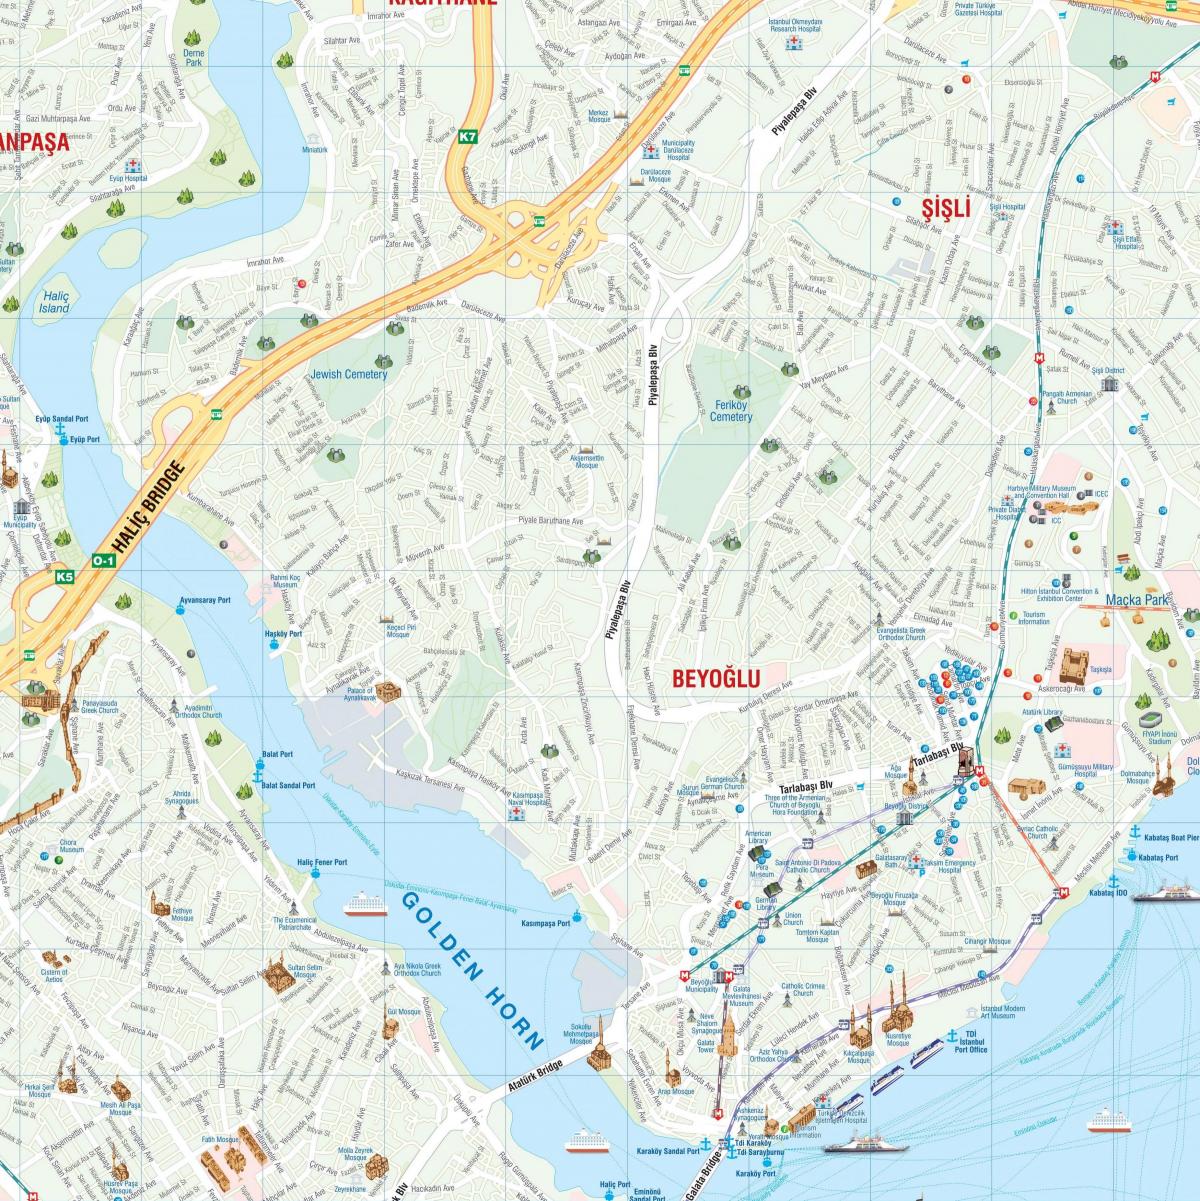 mapa de pera istanbul